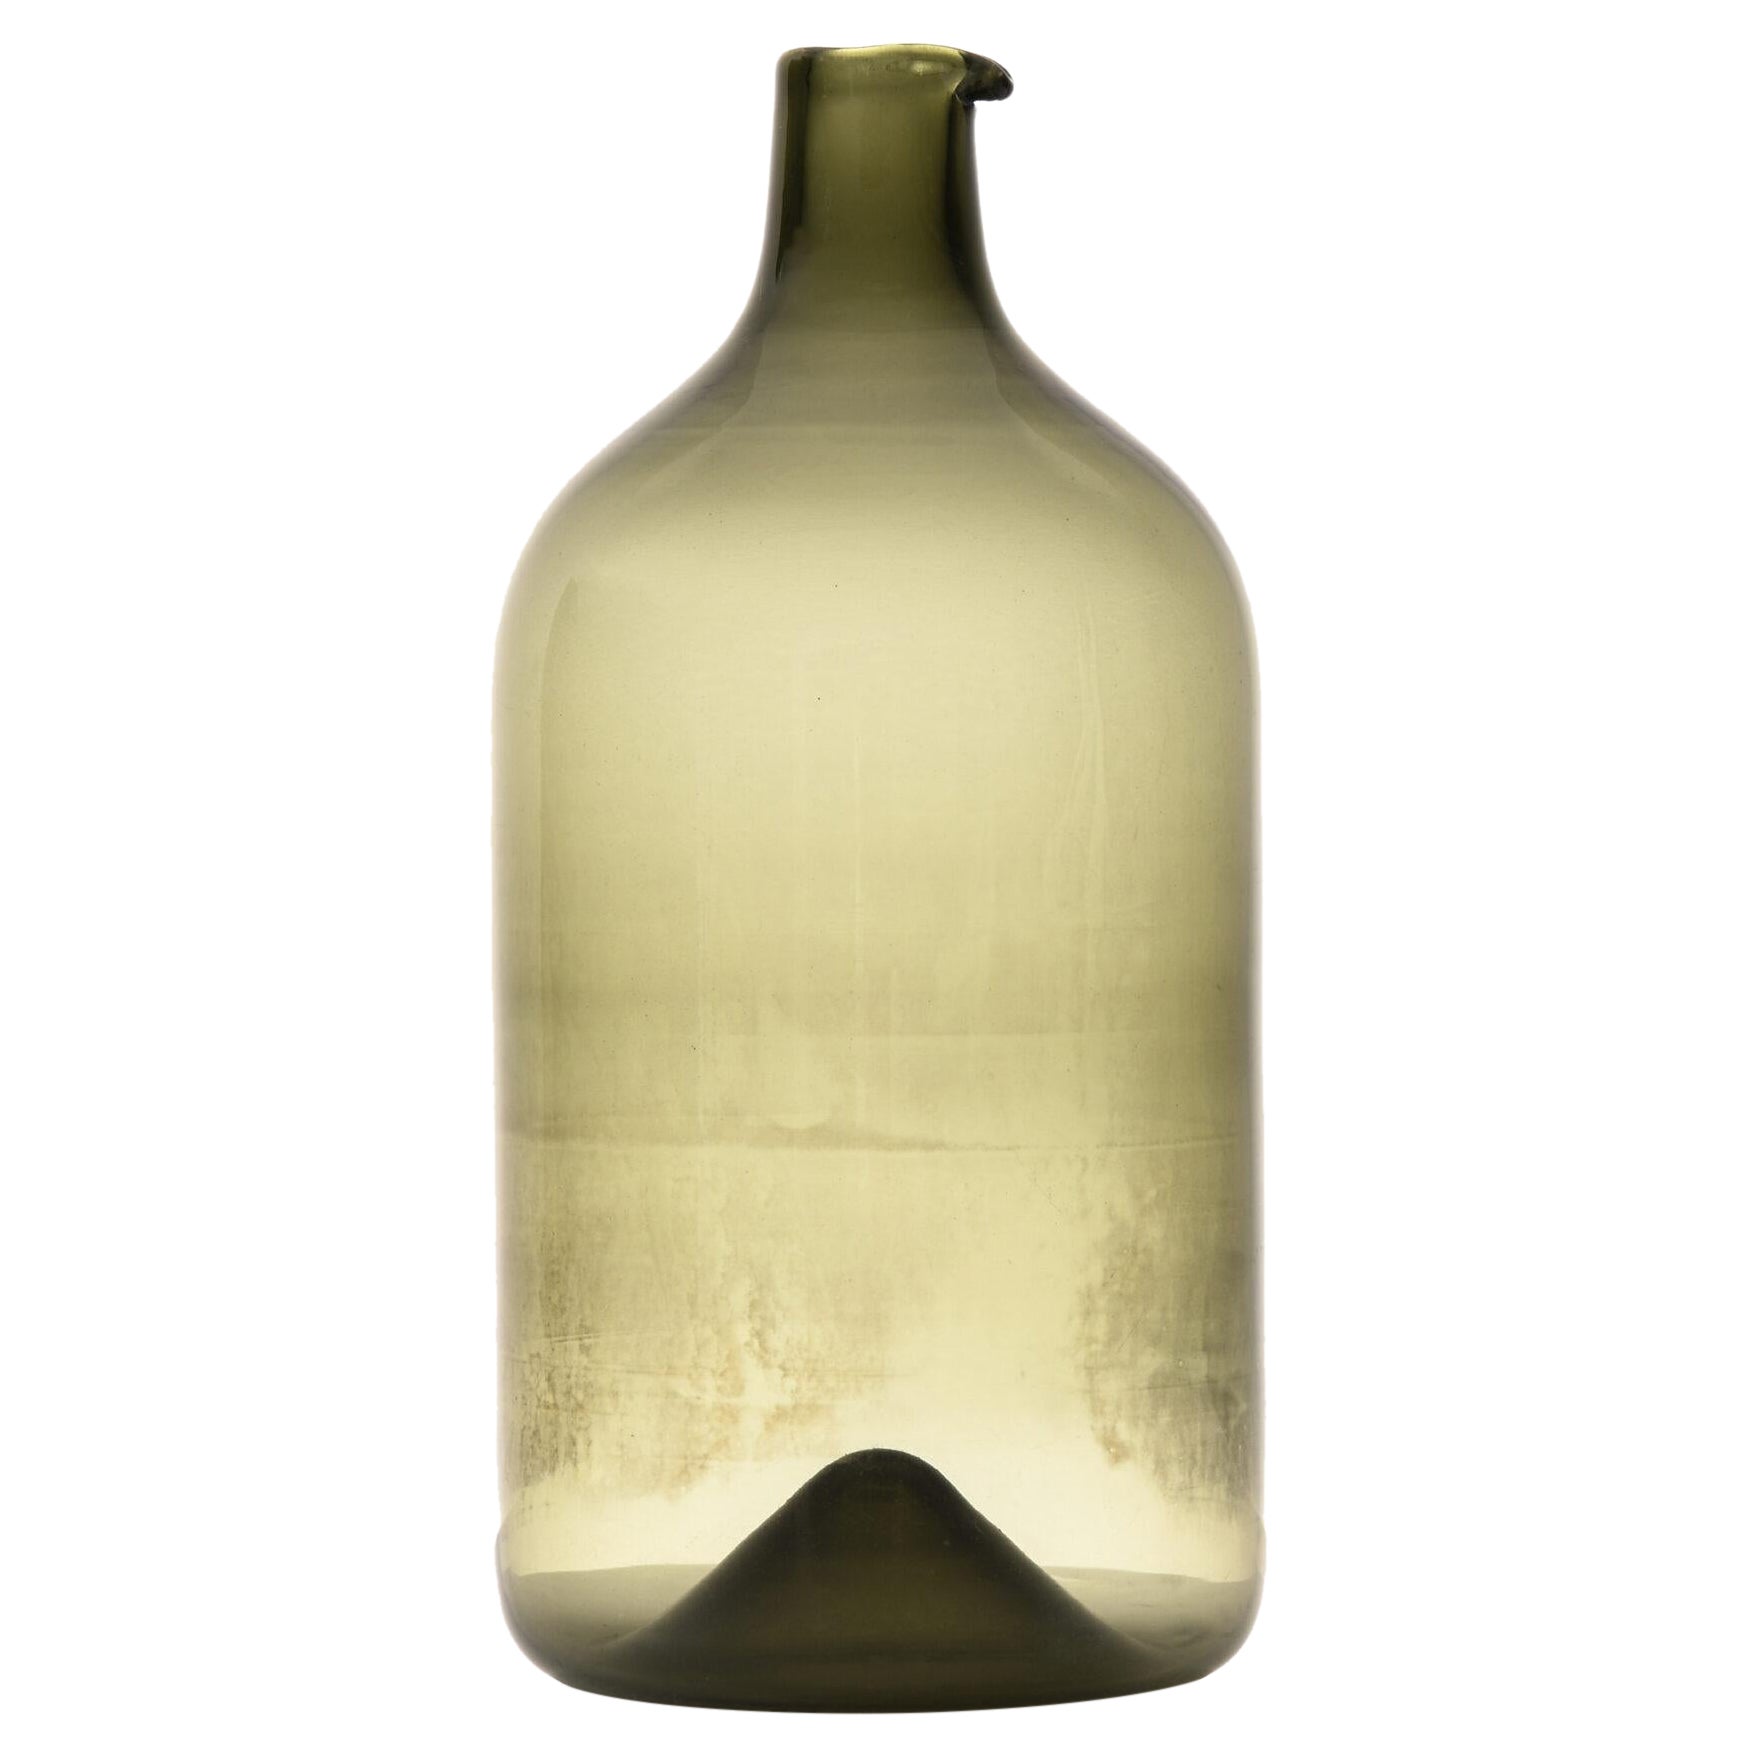 Timo Sarpaneva Flasche / Vase Modell Pullo Hergestellt von Iittala in Finnland